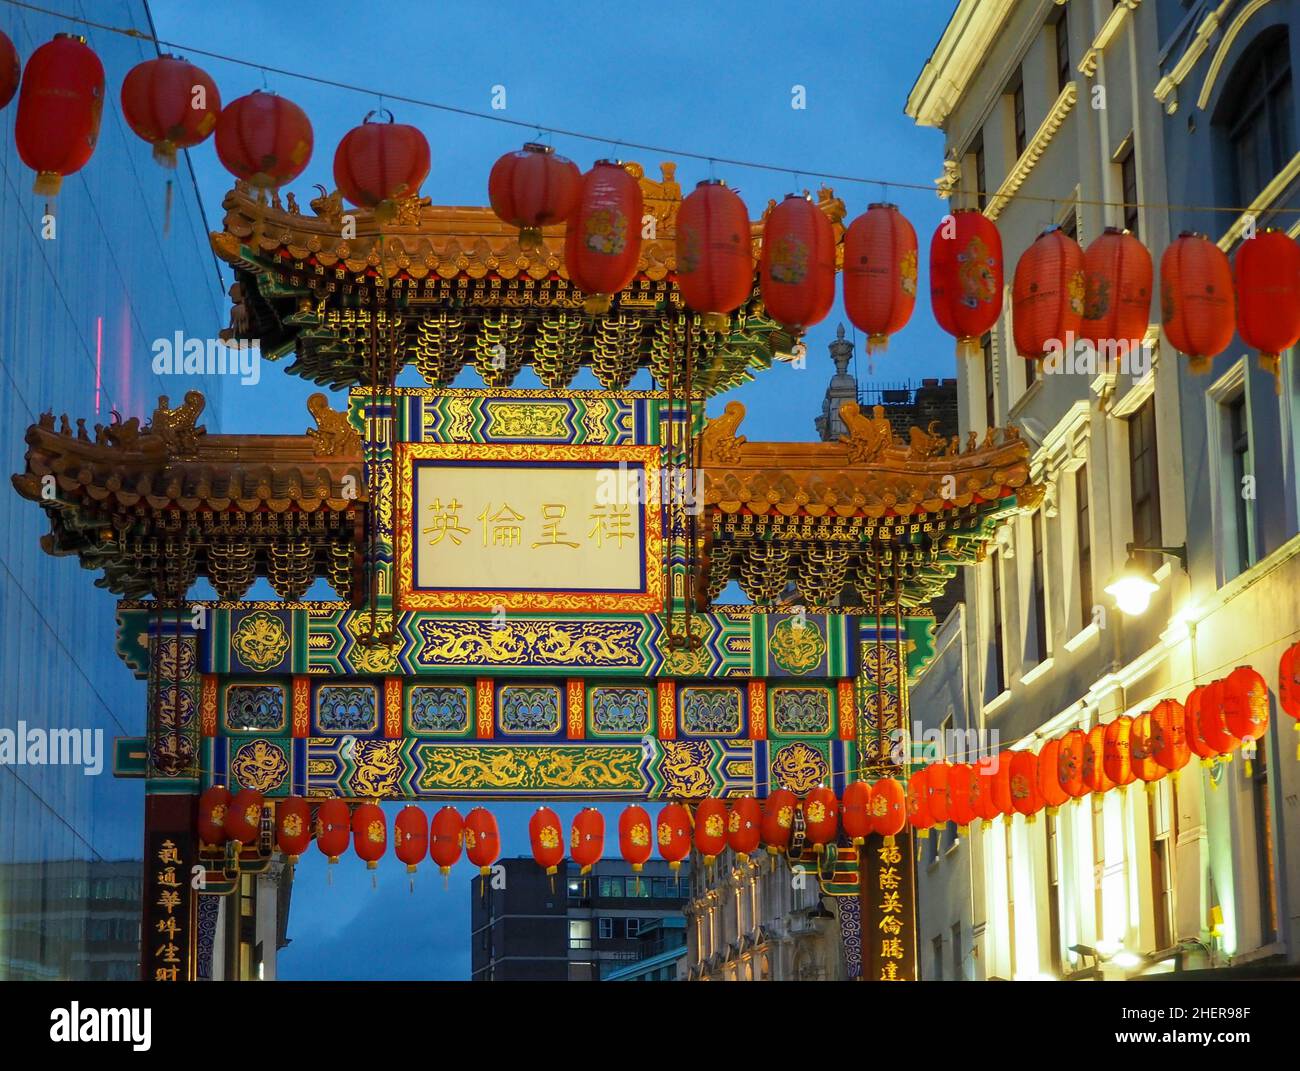 China Town Gate Londres dans le style de la dynastie Qing avec des lanternes suspendues devant Banque D'Images